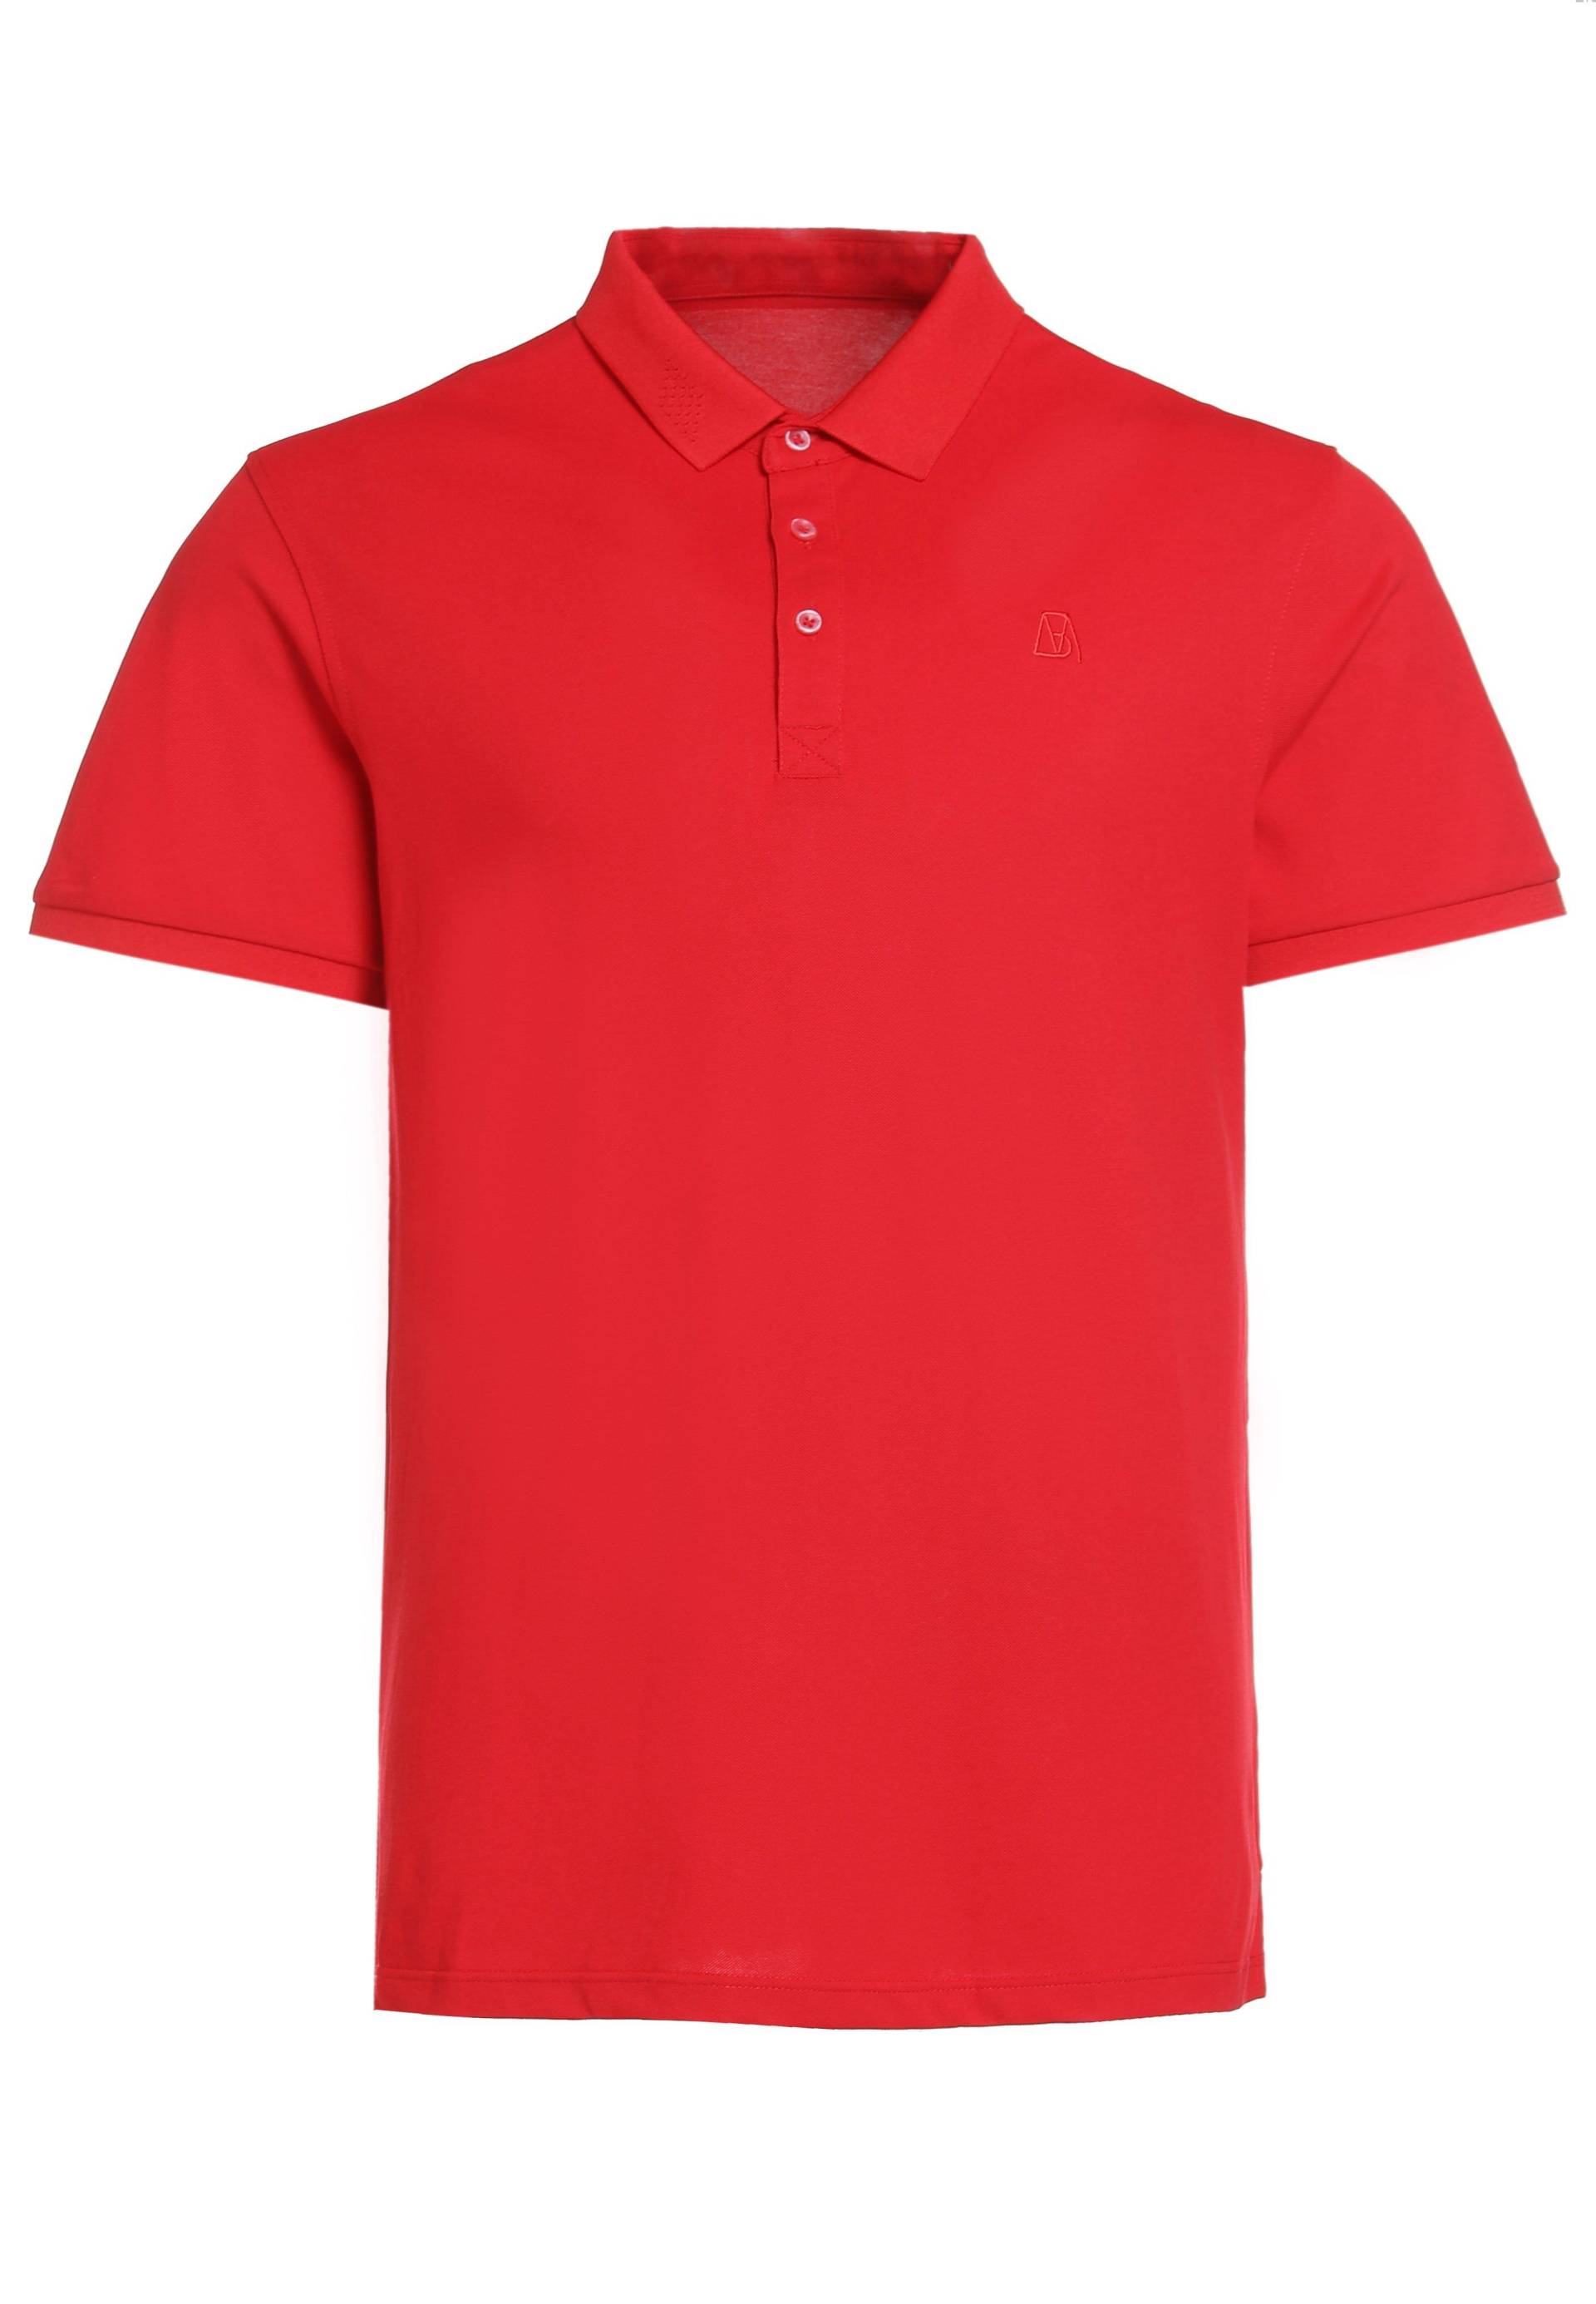 Schlichtes Poloshirt Aus Baumwolle Herren Rot Bunt XL von Bellemere New York